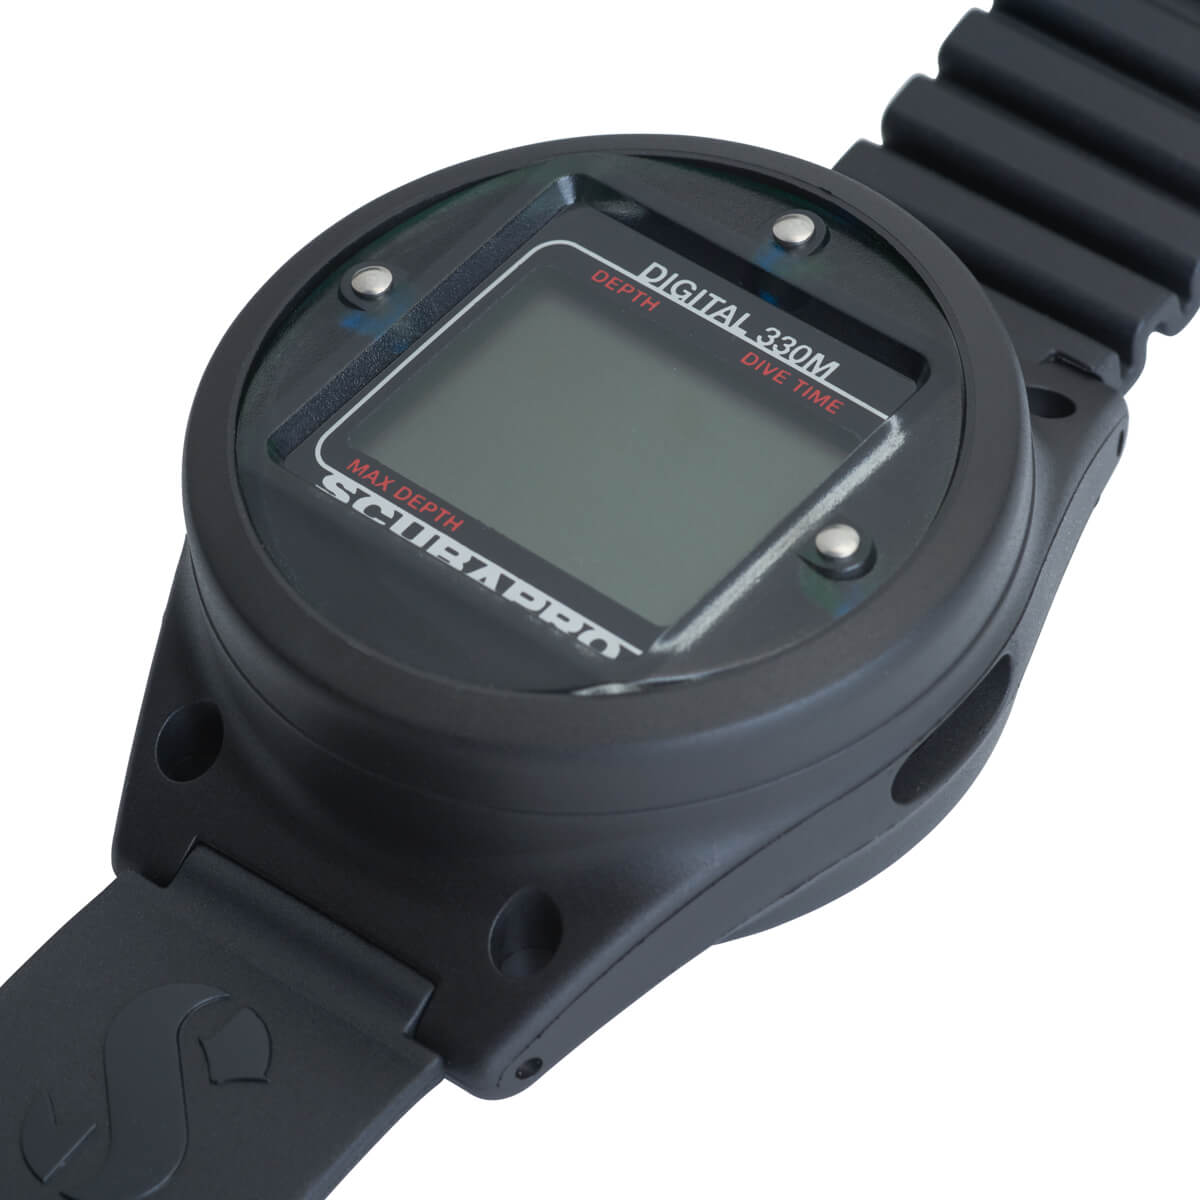 Used Scubapro Digital Depth Gauge Wrist Mount